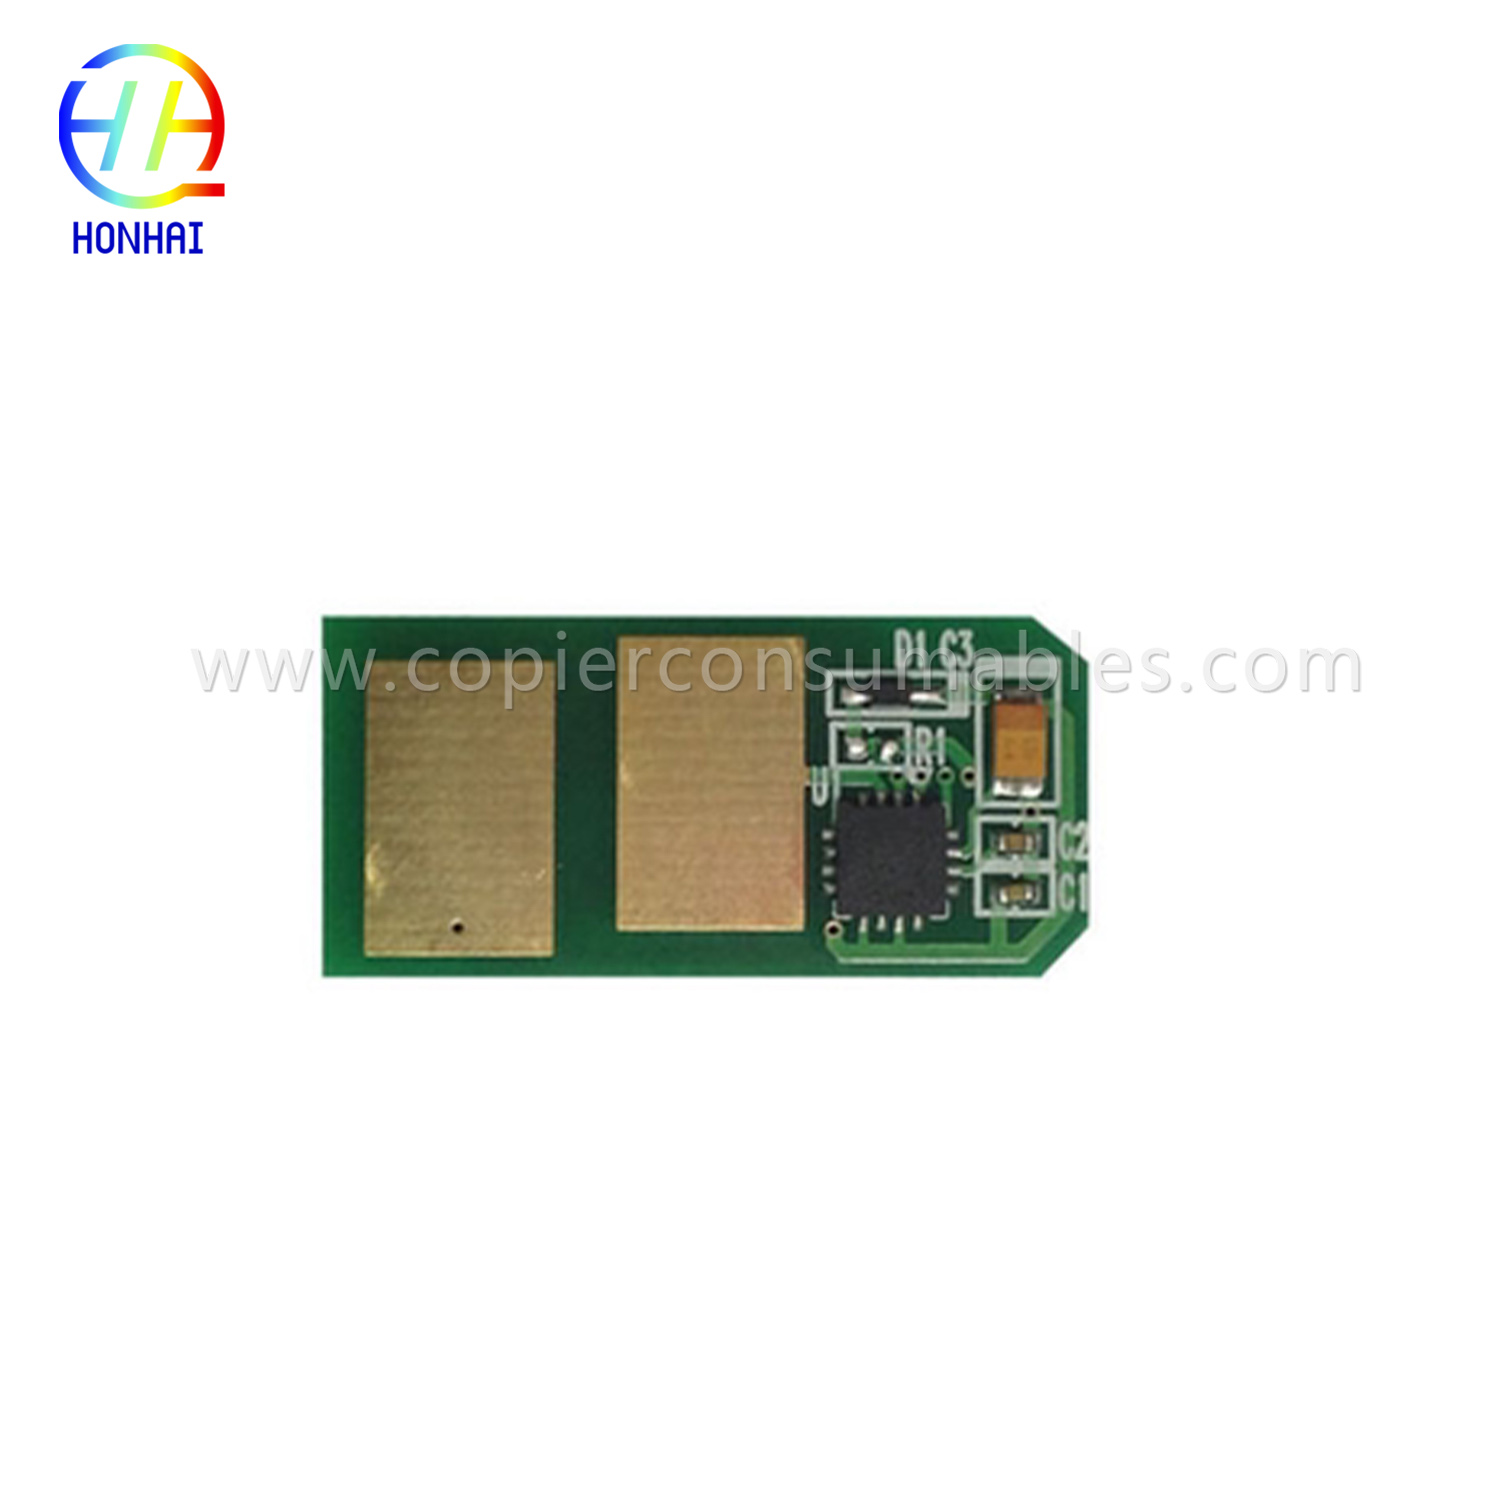 Tinte Cartridge Chip pro OKI C301 C321 1.5K